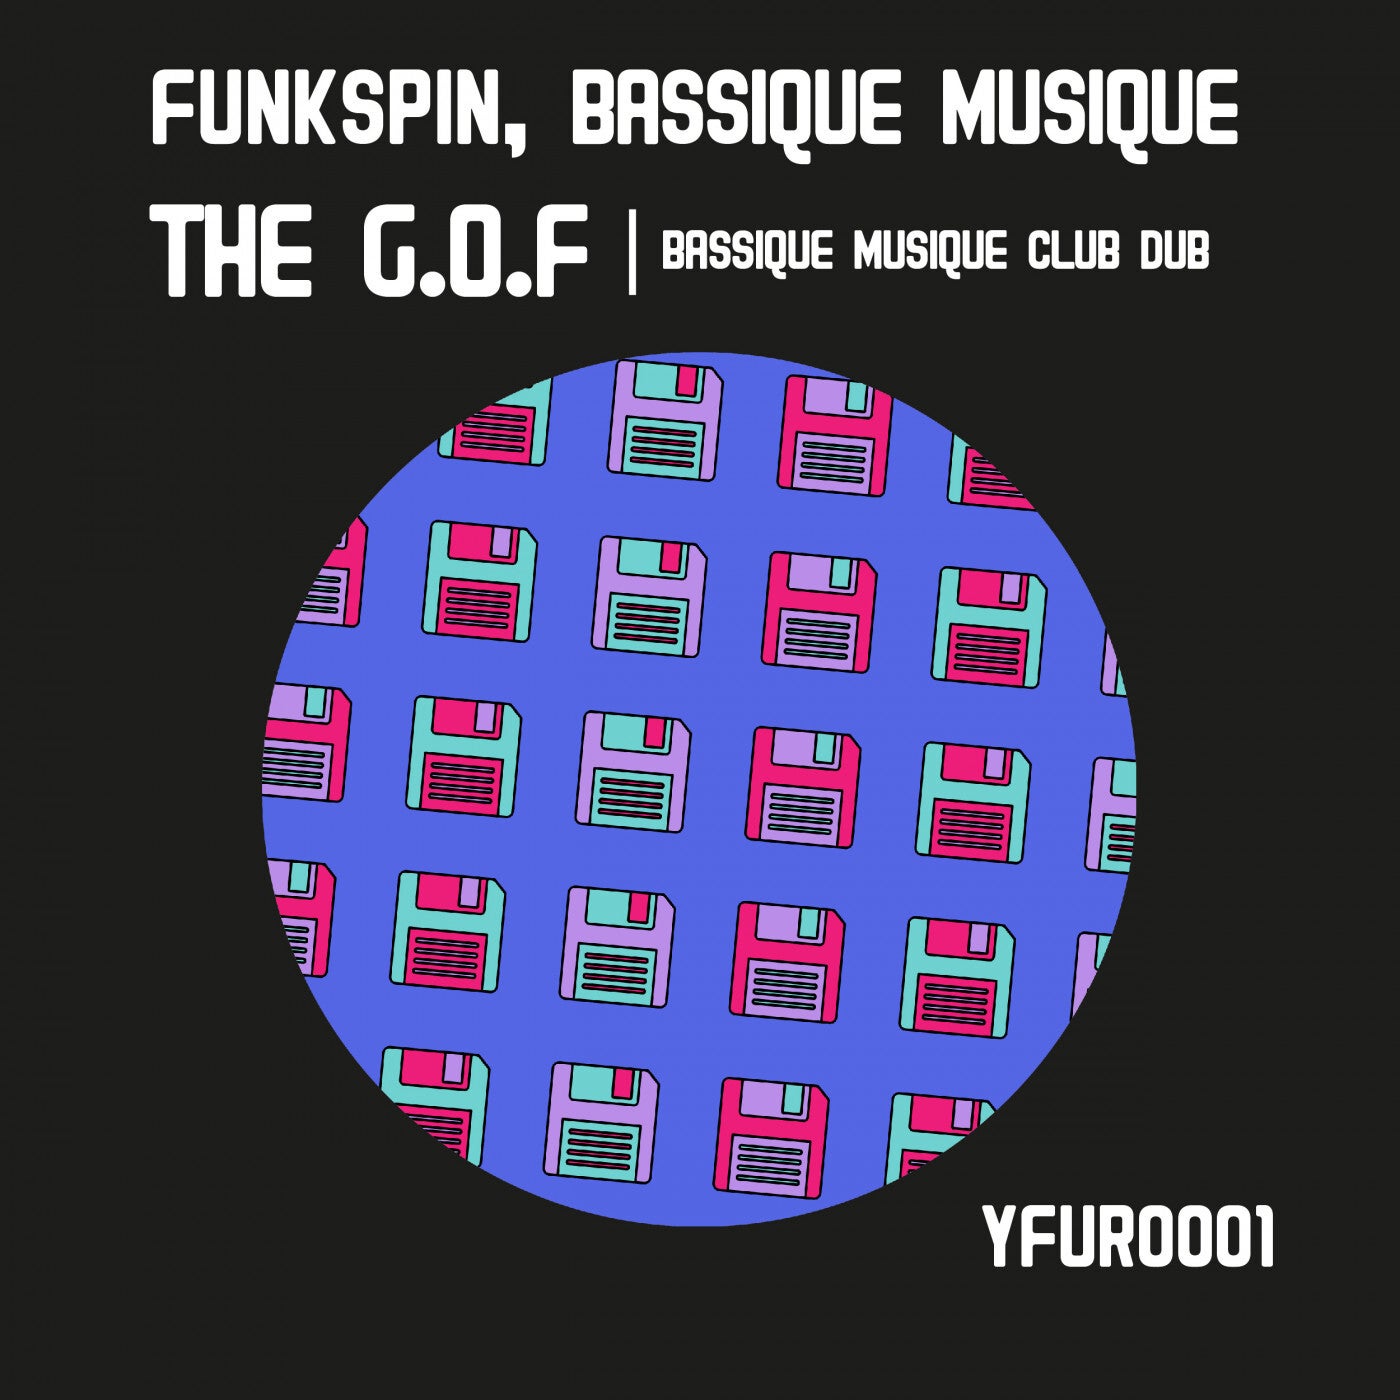 The G.O.F (Bassique Musique Club Dub)